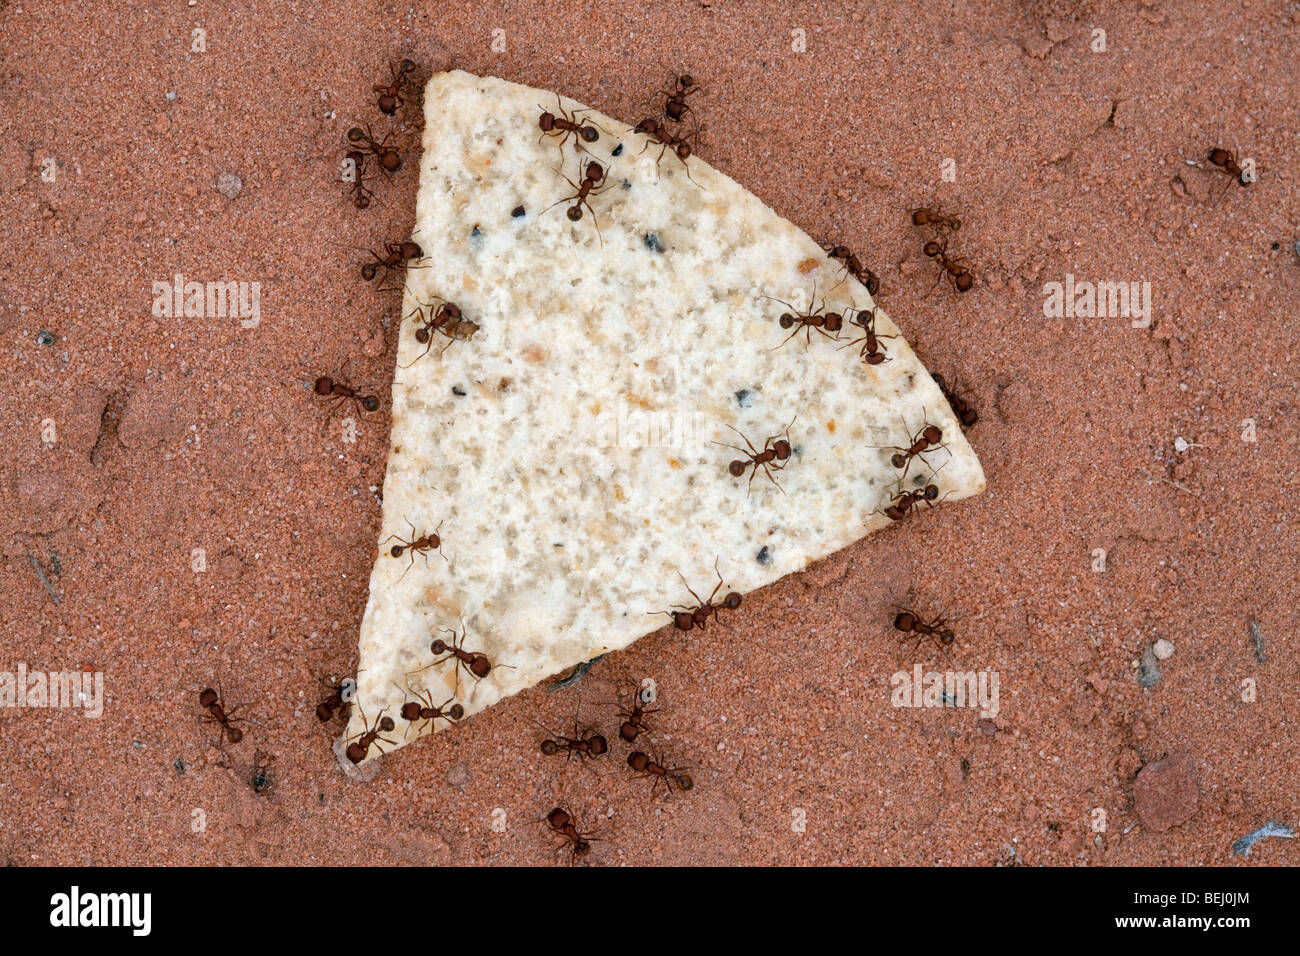 Ameisen arbeiten zusammen, um Lebensmittel, die viel größer als Sie selbst zu bekämpfen. Stockfoto